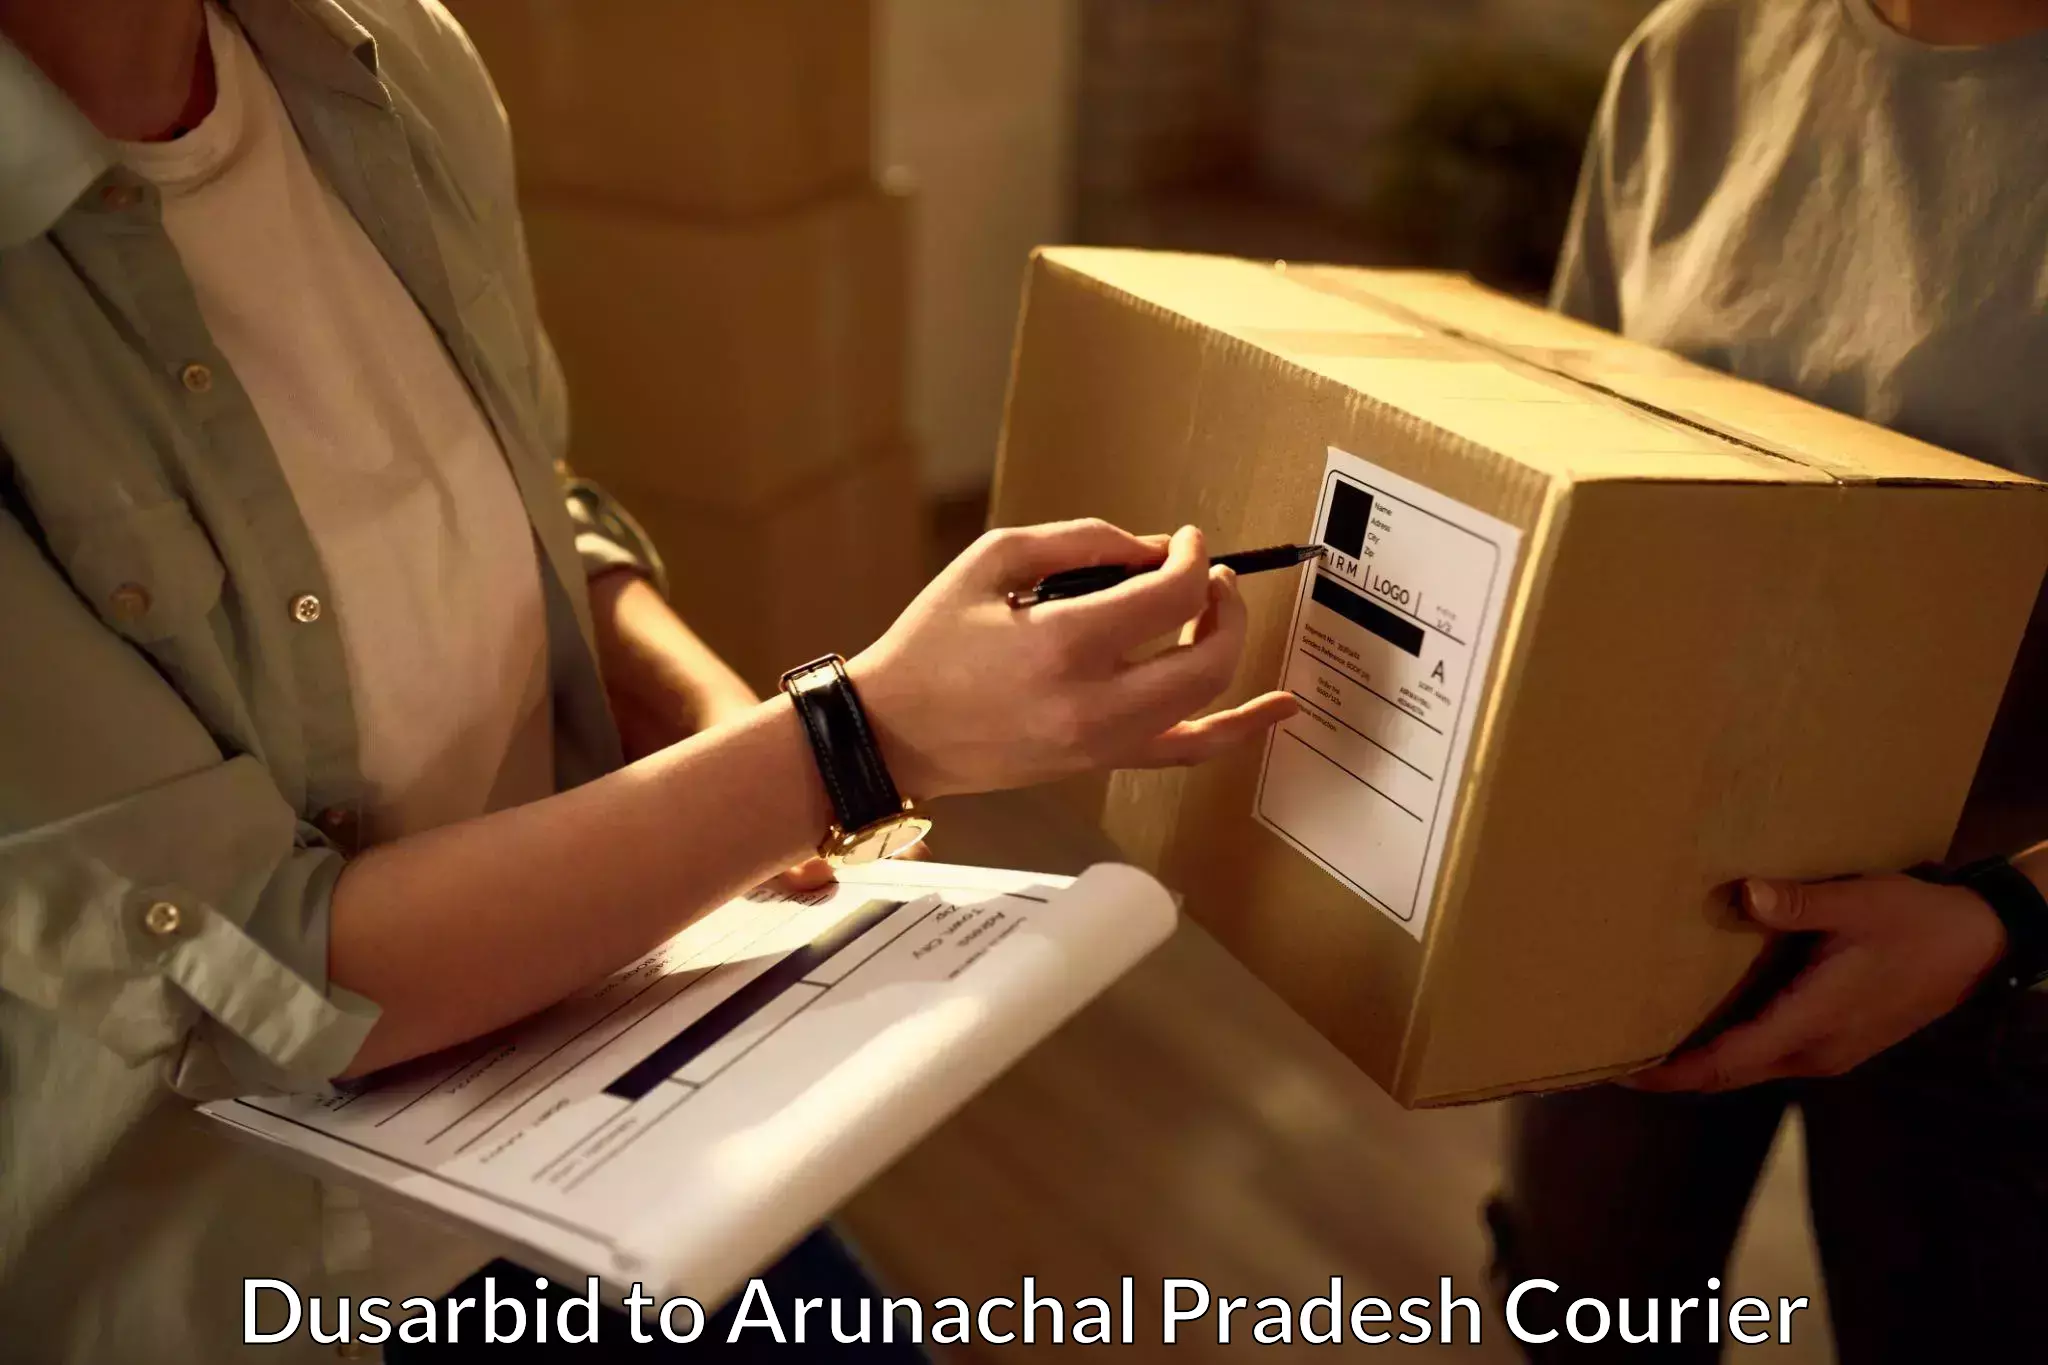 Residential courier service Dusarbid to Arunachal Pradesh